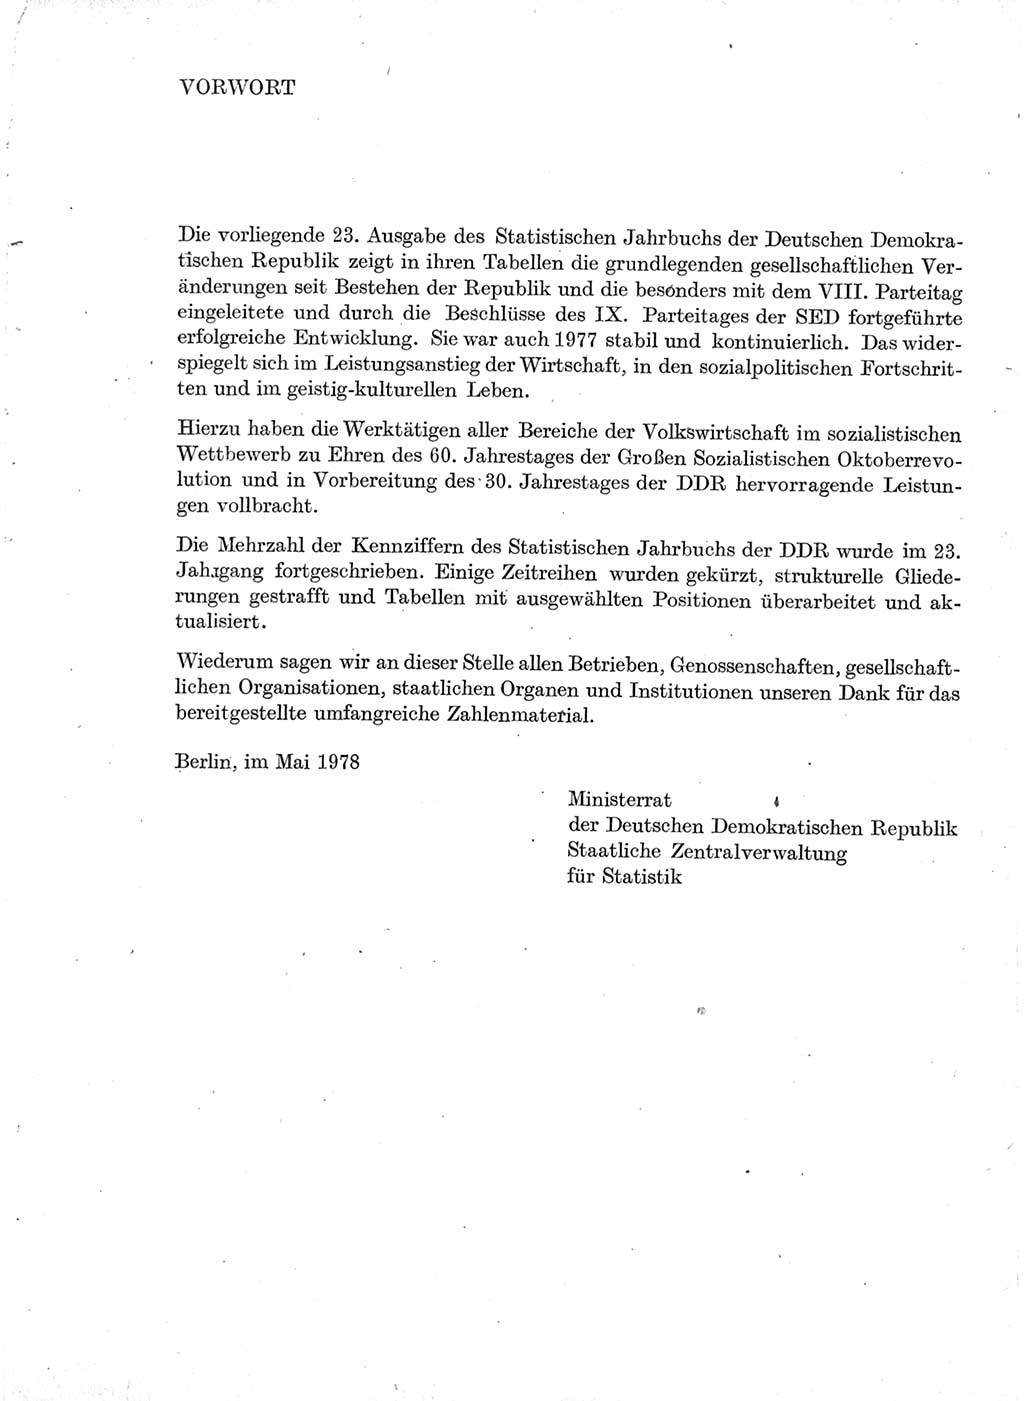 Statistisches Jahrbuch der Deutschen Demokratischen Republik (DDR) 1978, Seite 3 (Stat. Jb. DDR 1978, S. 3)